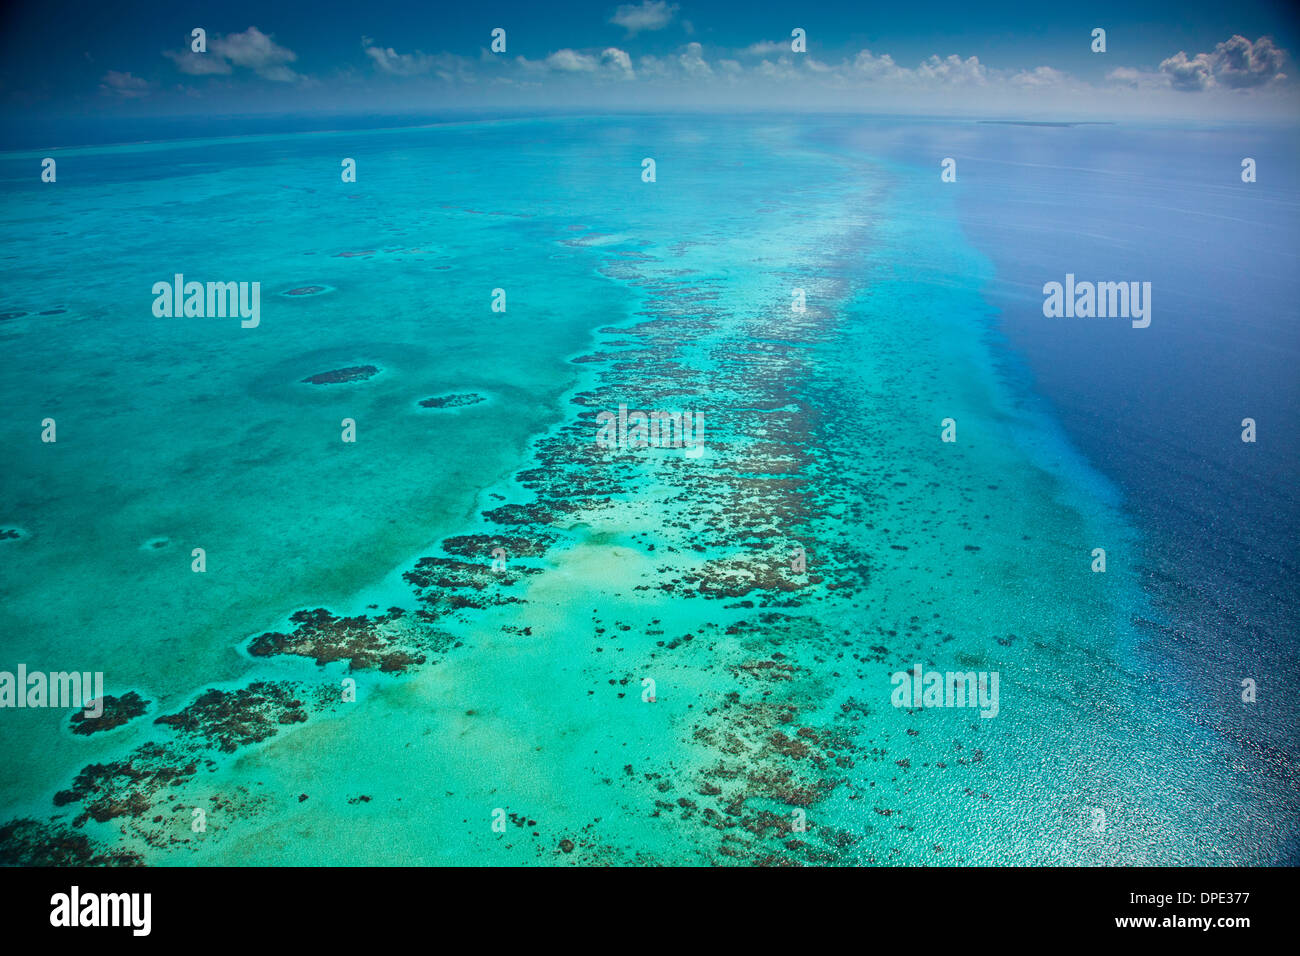 Détail du récif méso-américain de la mer des Caraïbes Belize Réserve Lighthouse Reef Atoll Reef Plus grand récif dans Hémisphère Ouest Vue aérienne Banque D'Images